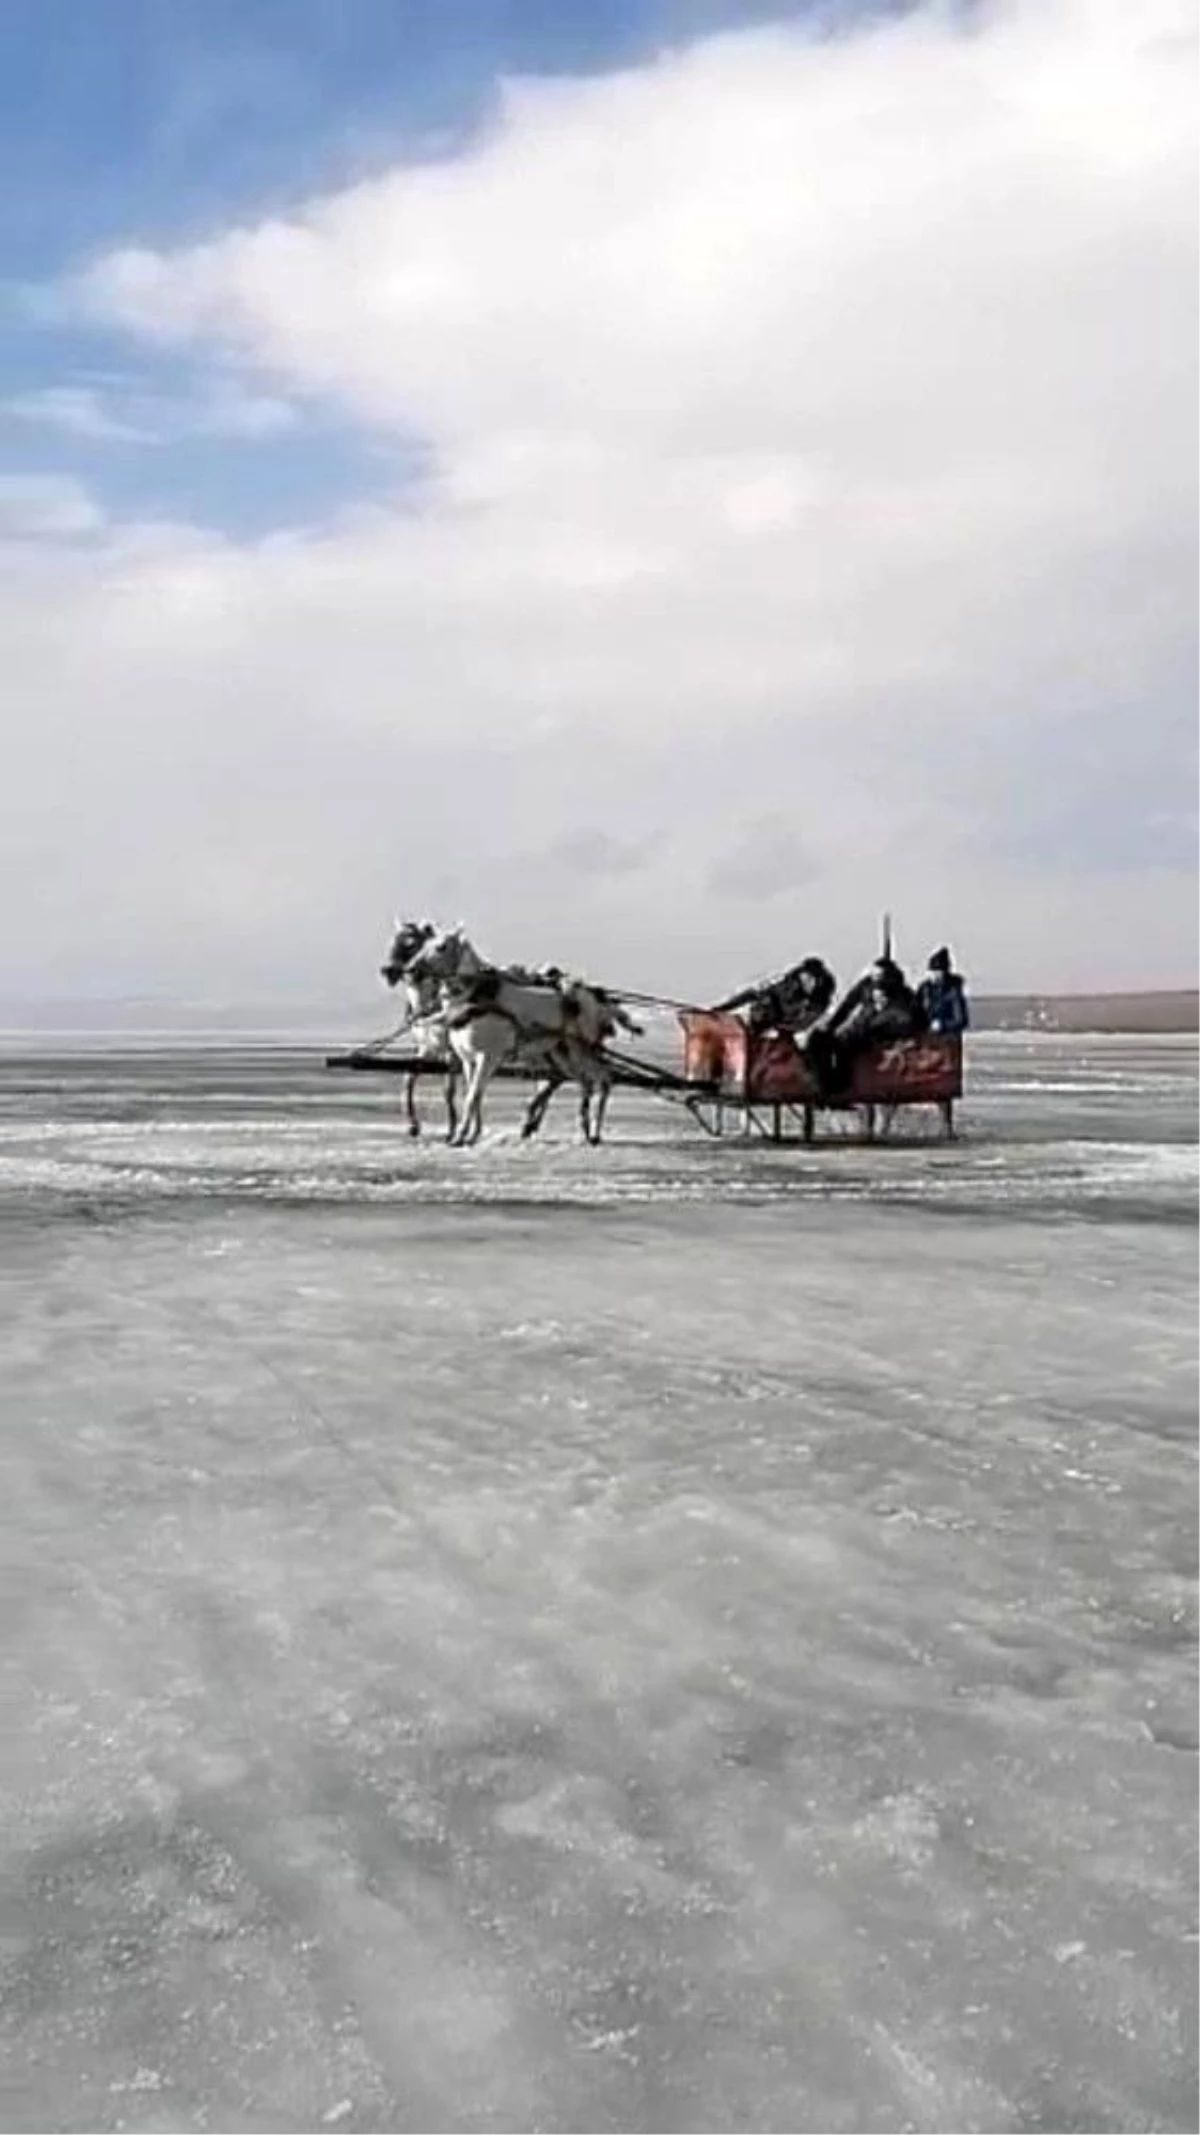 Son dakika haber | Donan Çıldır Gölü üzerinde atlı kızakla drift yaptılar